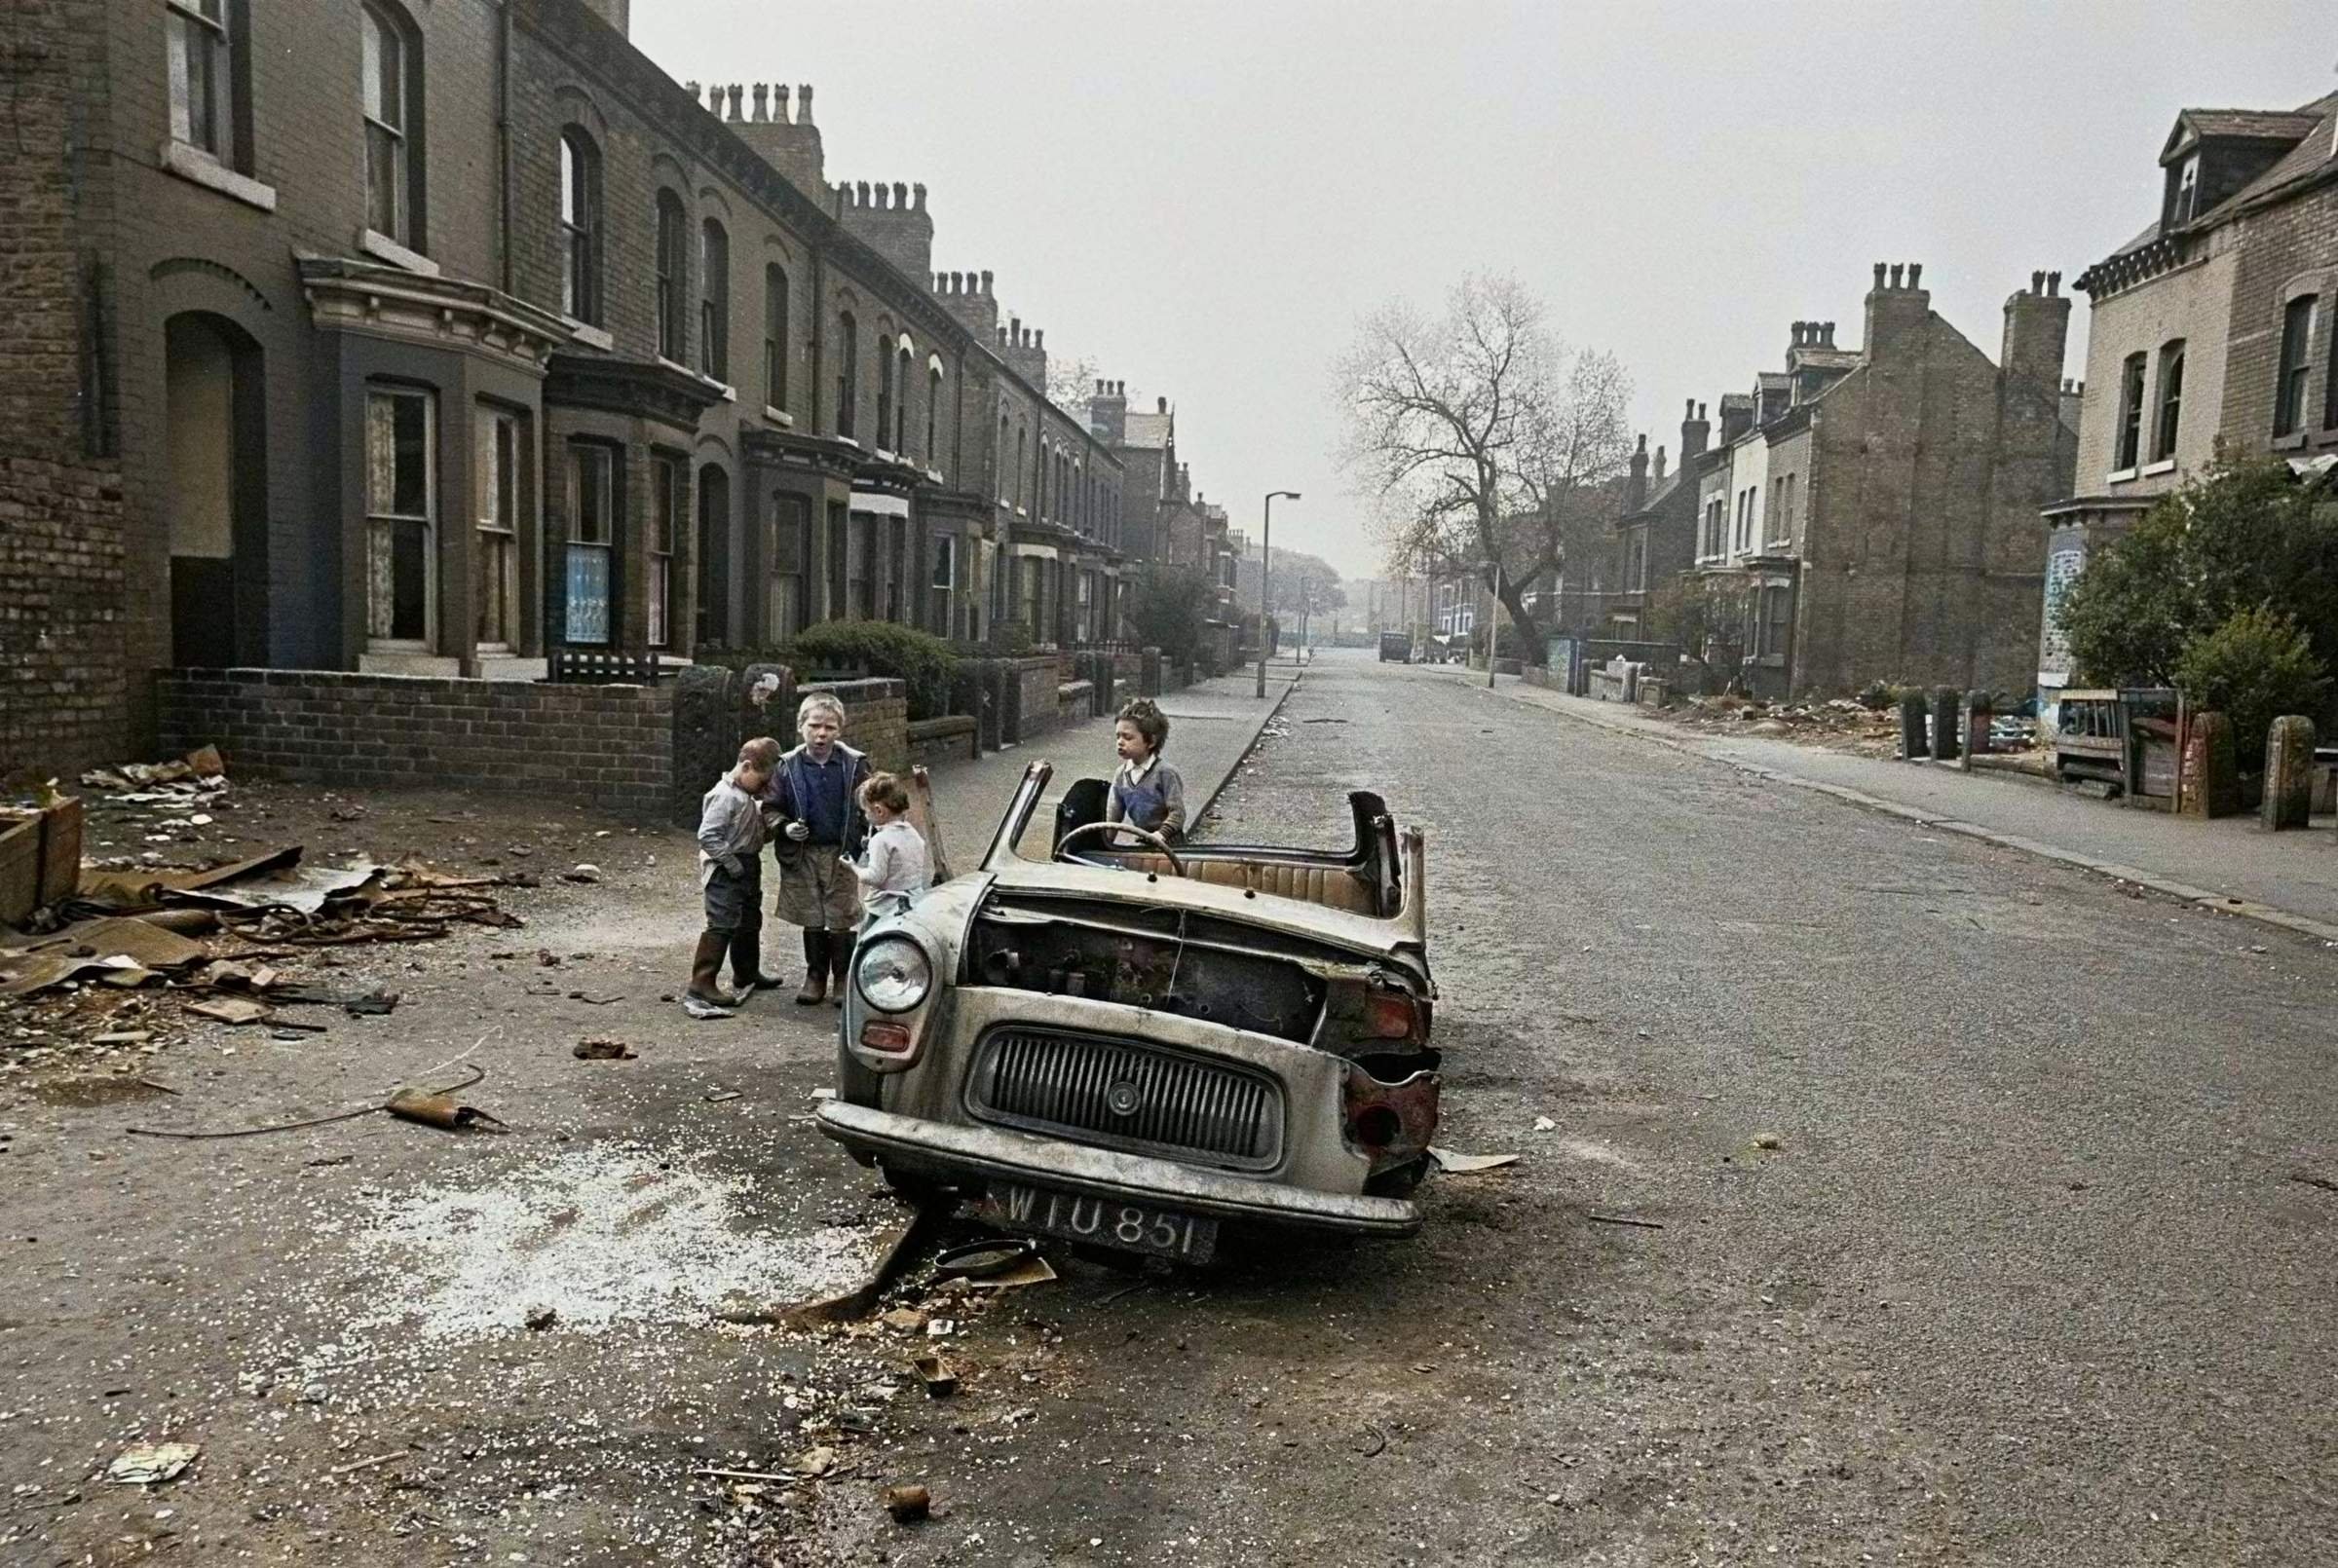 Европа 1960 е. Лондон в 60е гетто. Бедные в Британии в 1960-е. Глазго 60-х трущобы. Англия 1960е.